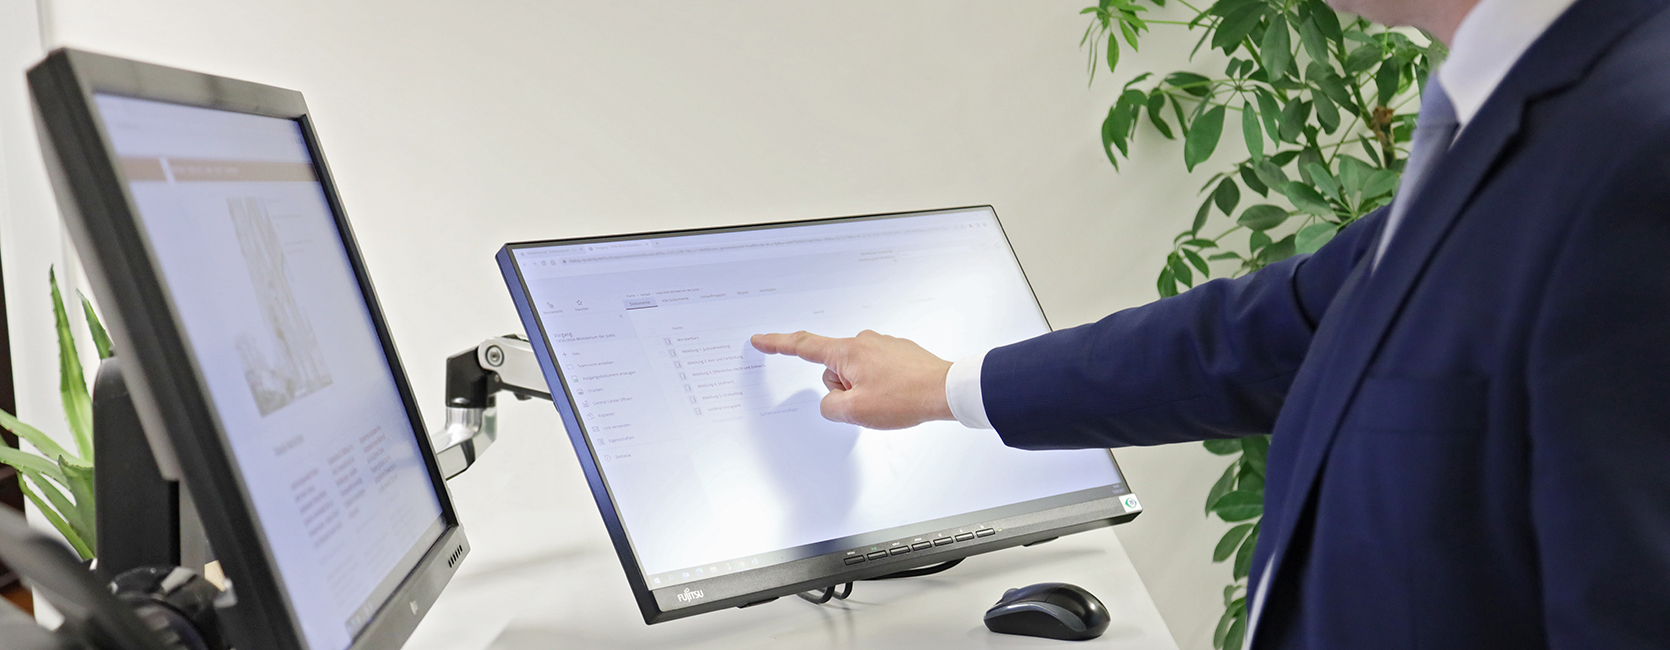 Eine männliche Person stehend vor einem Schreibtisch mit zwei Monitoren, einem Telefon und einer Tastatur. Männliche Person bedient einen Touch-Bildschirm.